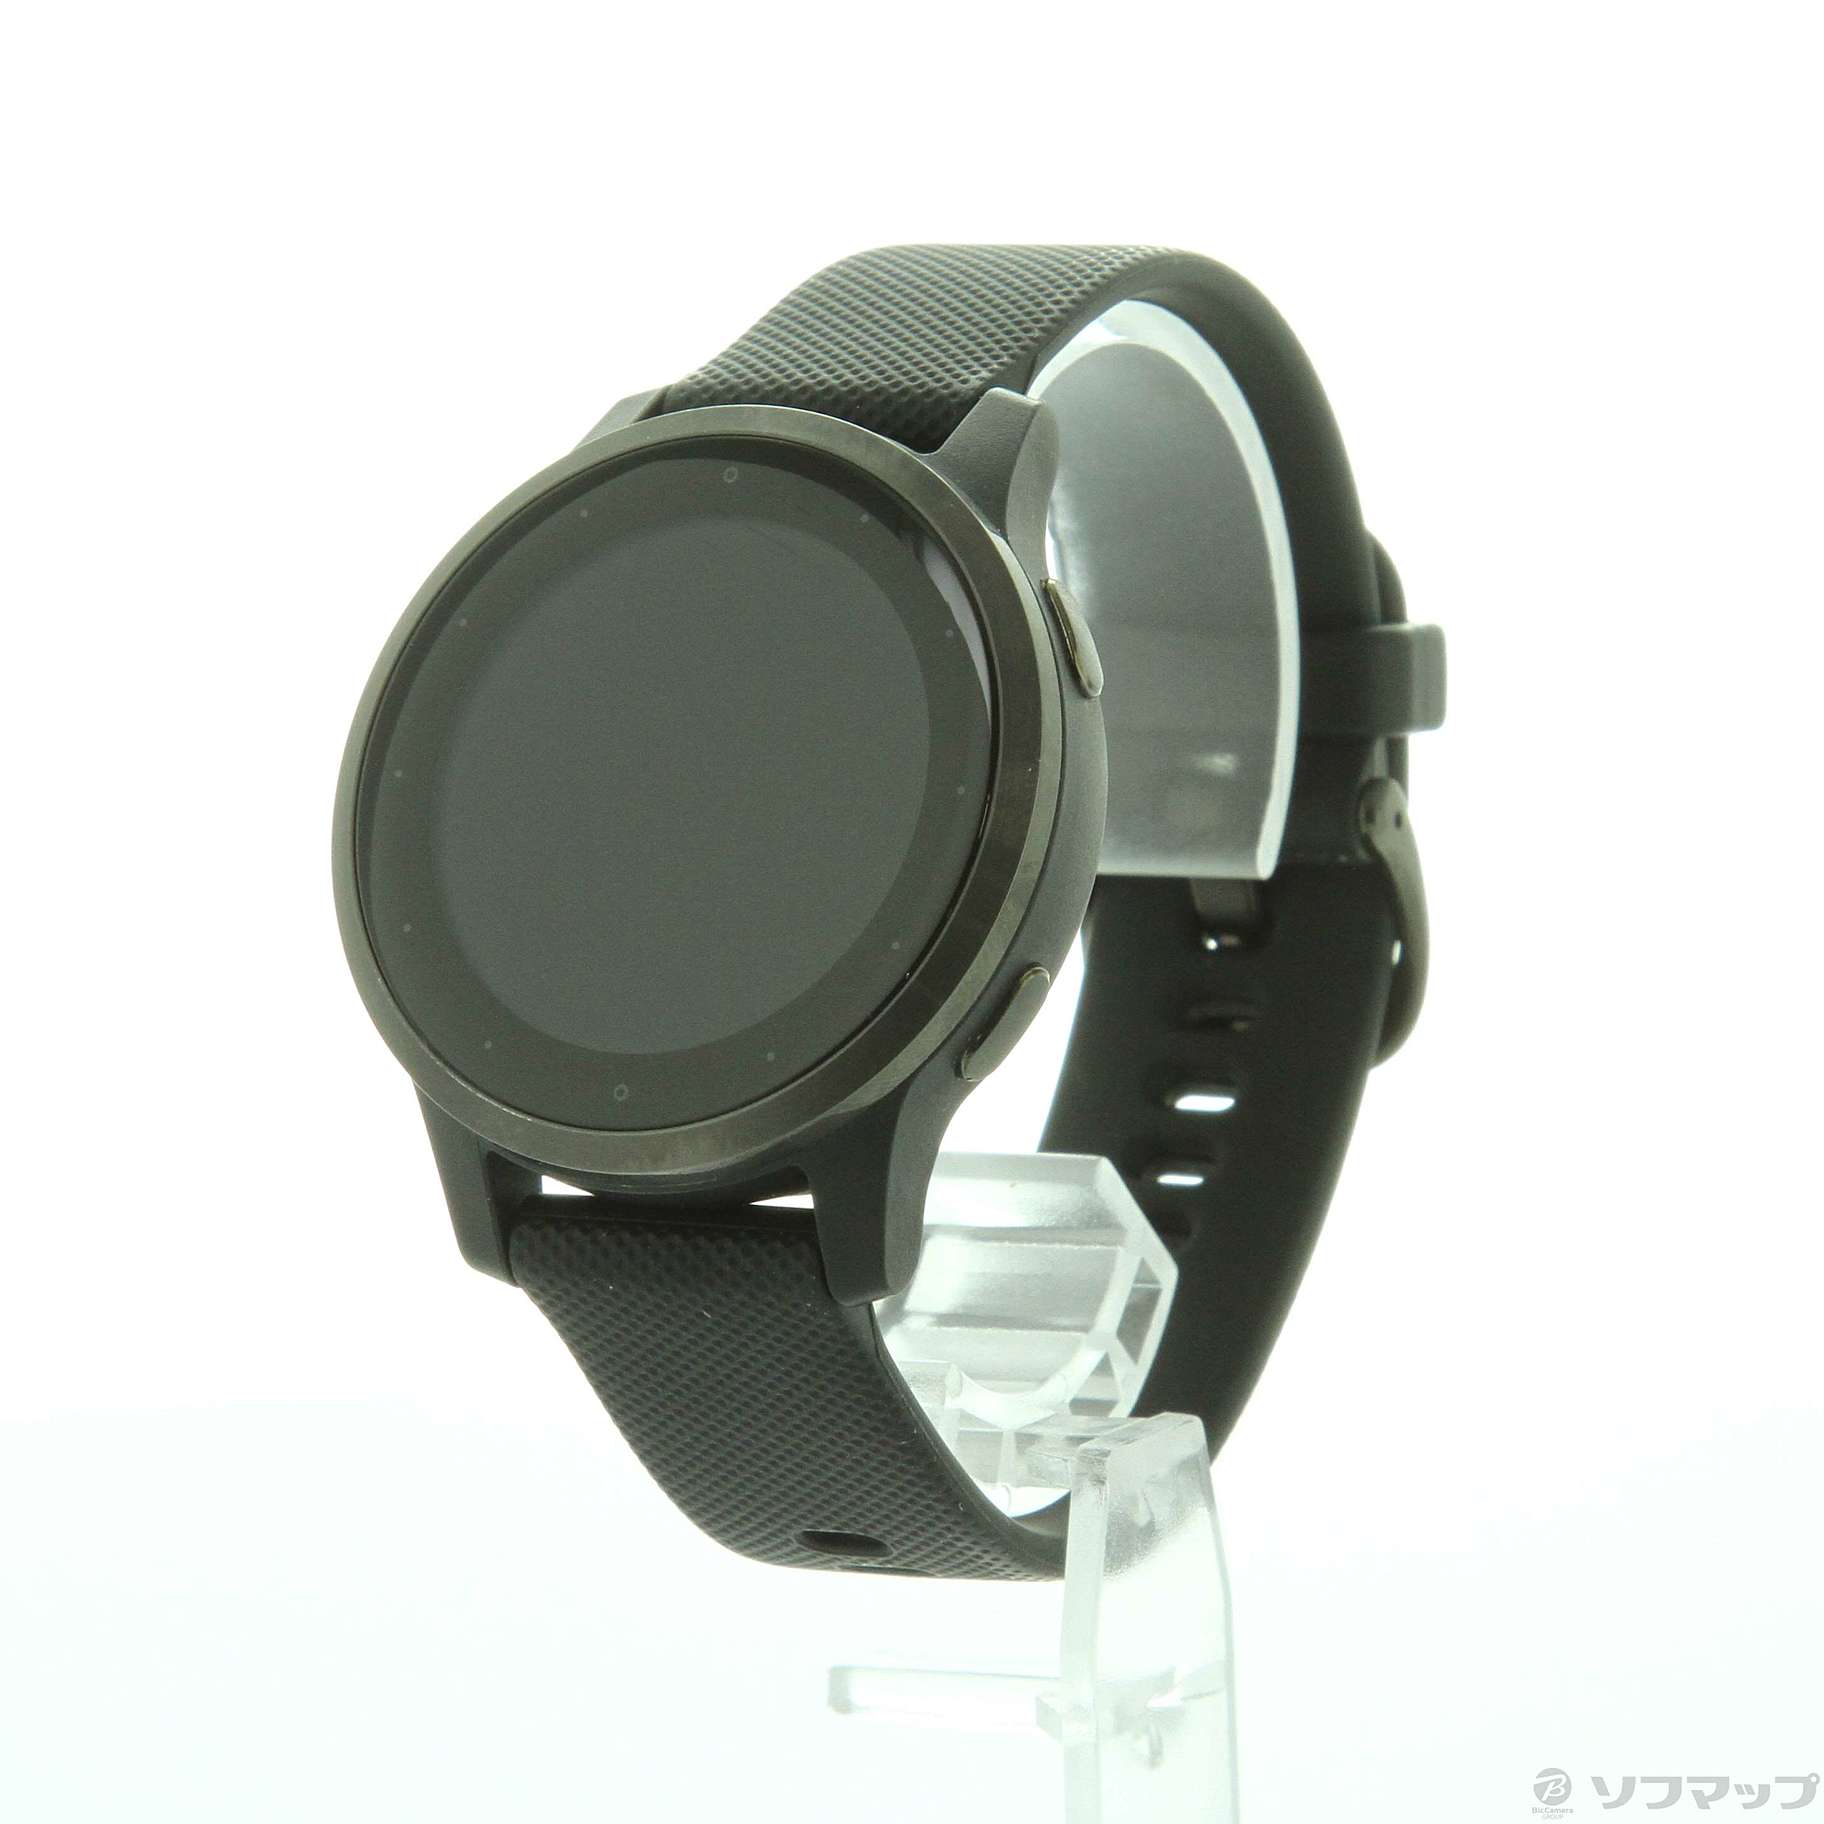 腕時計(デジタル)Garmin vivoactive 4 Black